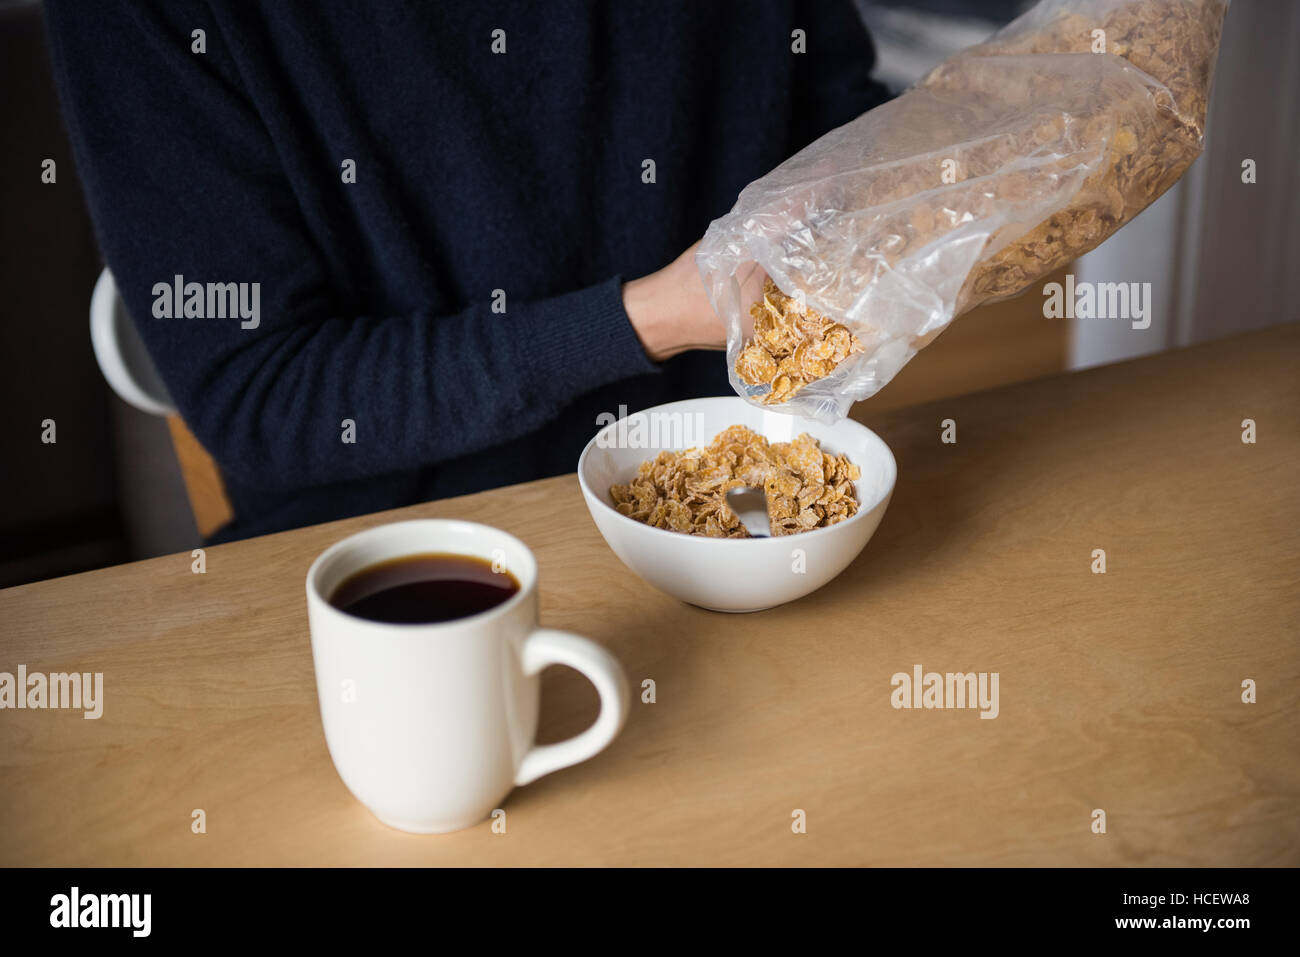 Sezione intermedia dell'uomo versando i cereali nel recipiente Foto Stock